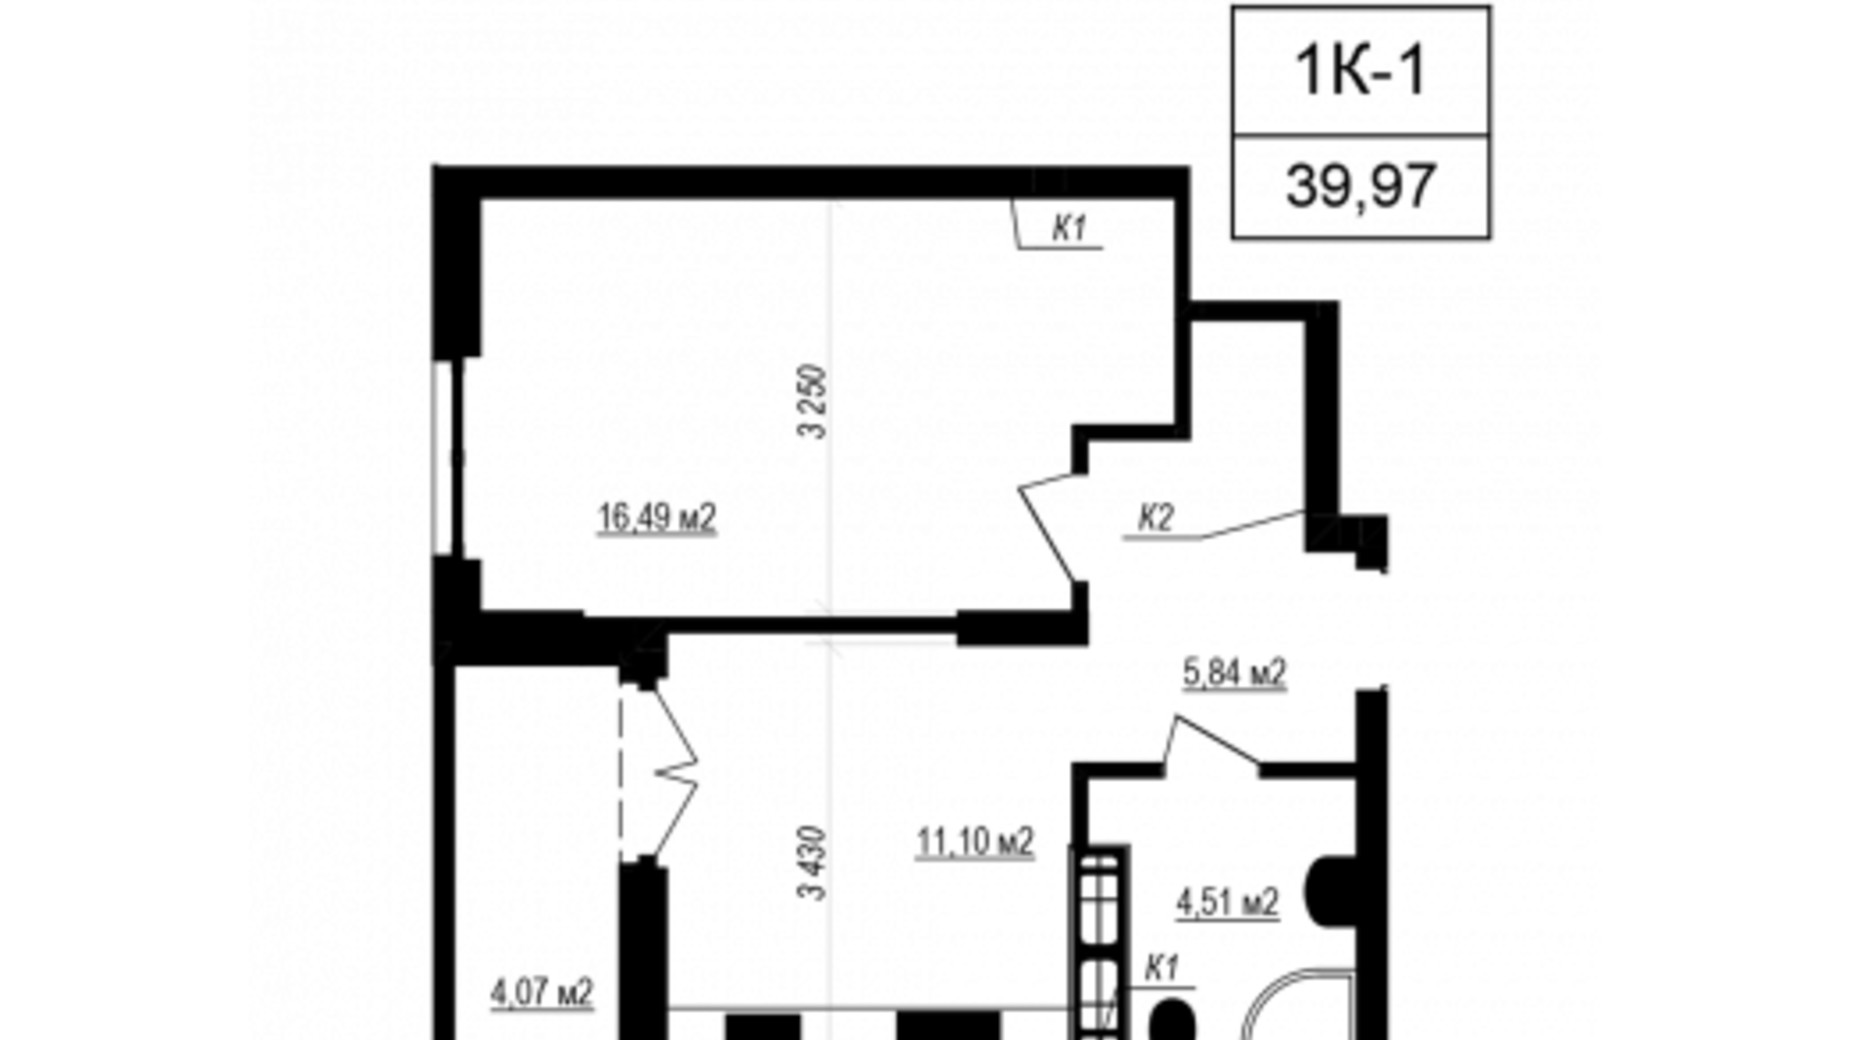 Планування 1-кімнатної квартири в ЖК Щасливий Grand 39.97 м², фото 660117